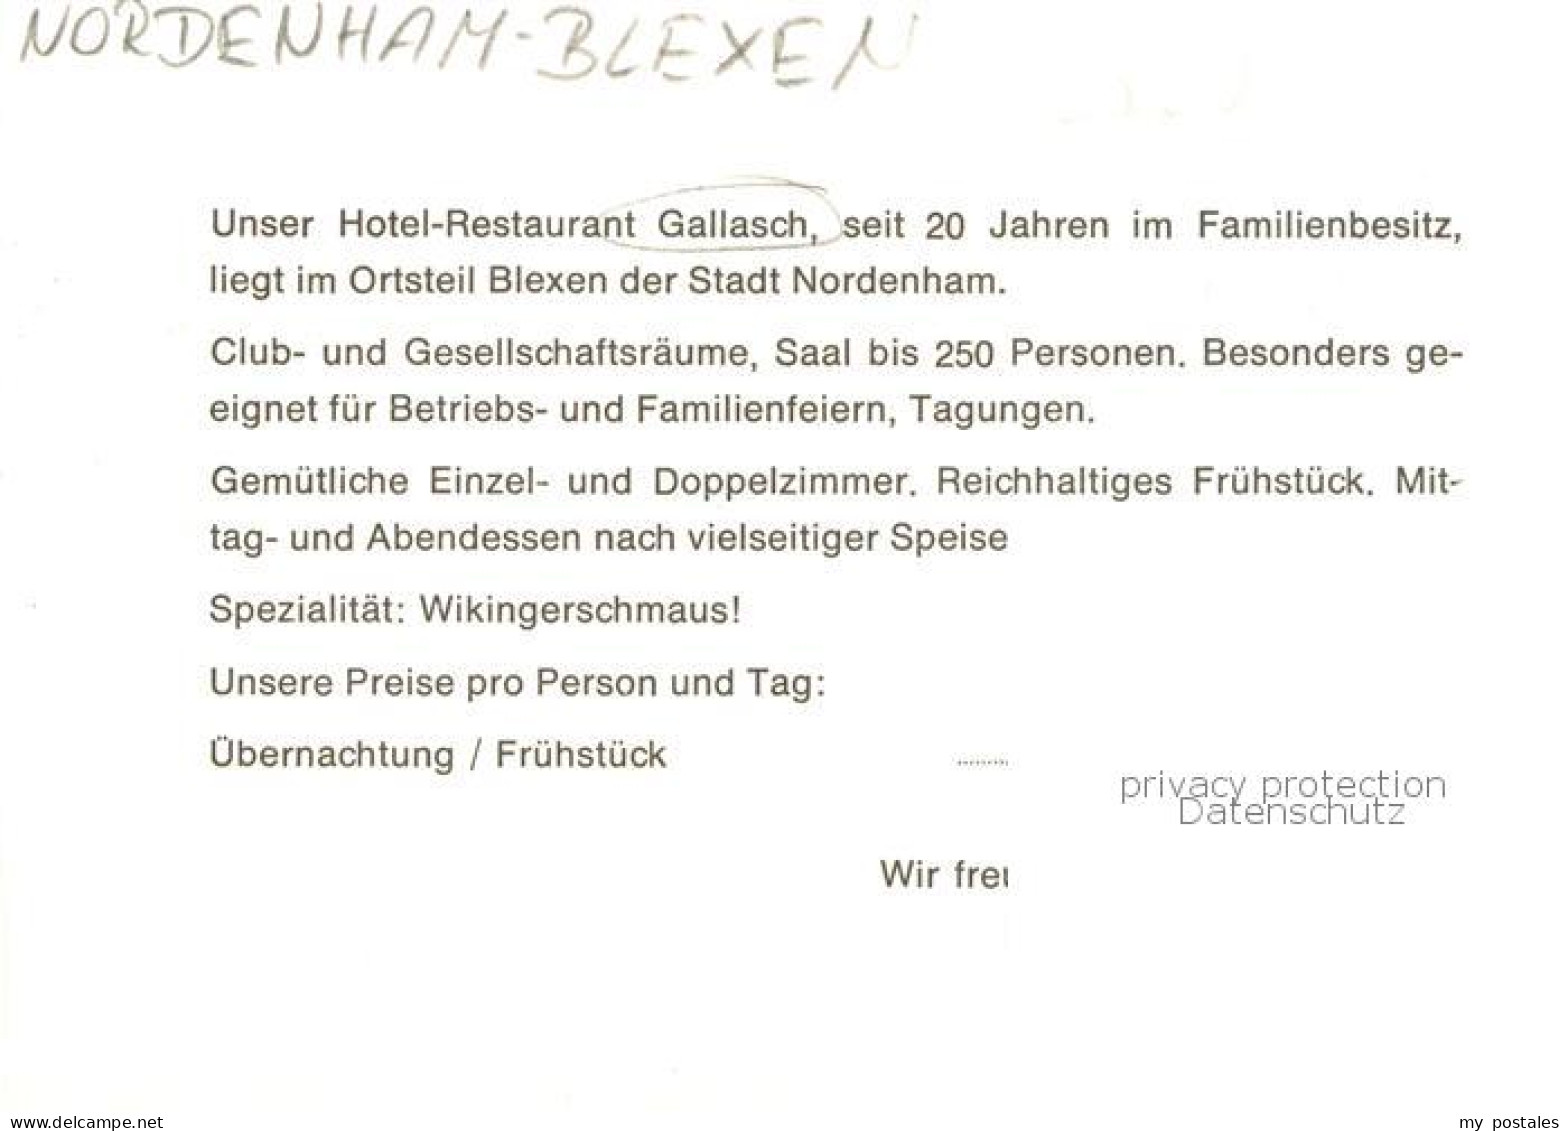 73848506 Blexen Hotel Restaurant Gallasch Blexen - Nordenham